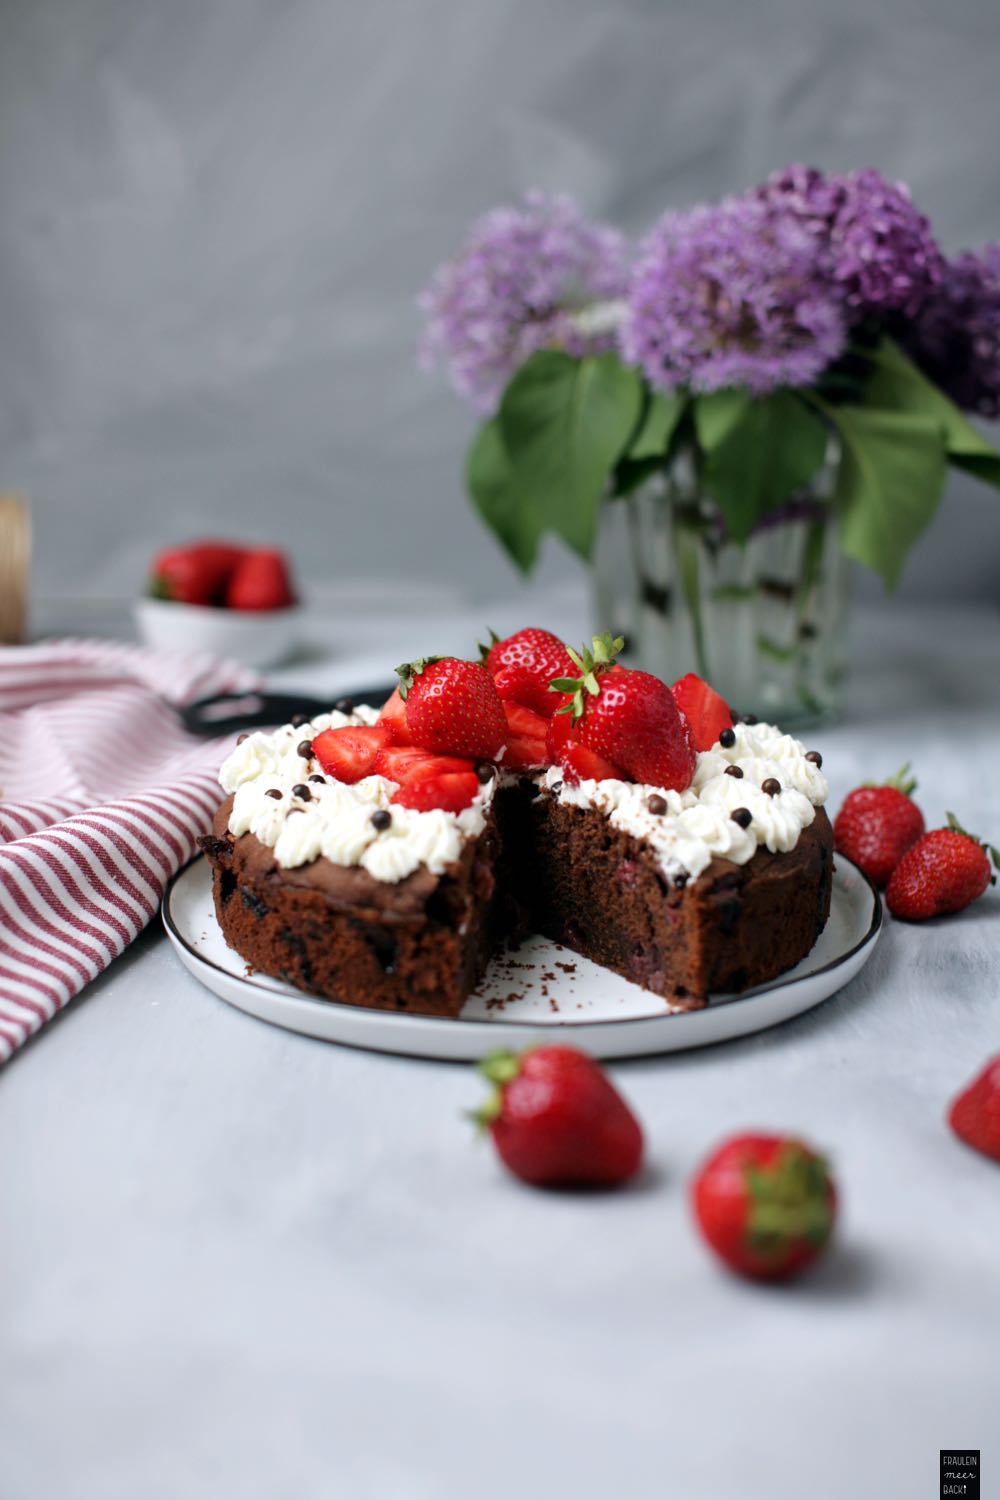 Fraeulein Meer backt Erdbeer-Schokoladen Kuchen